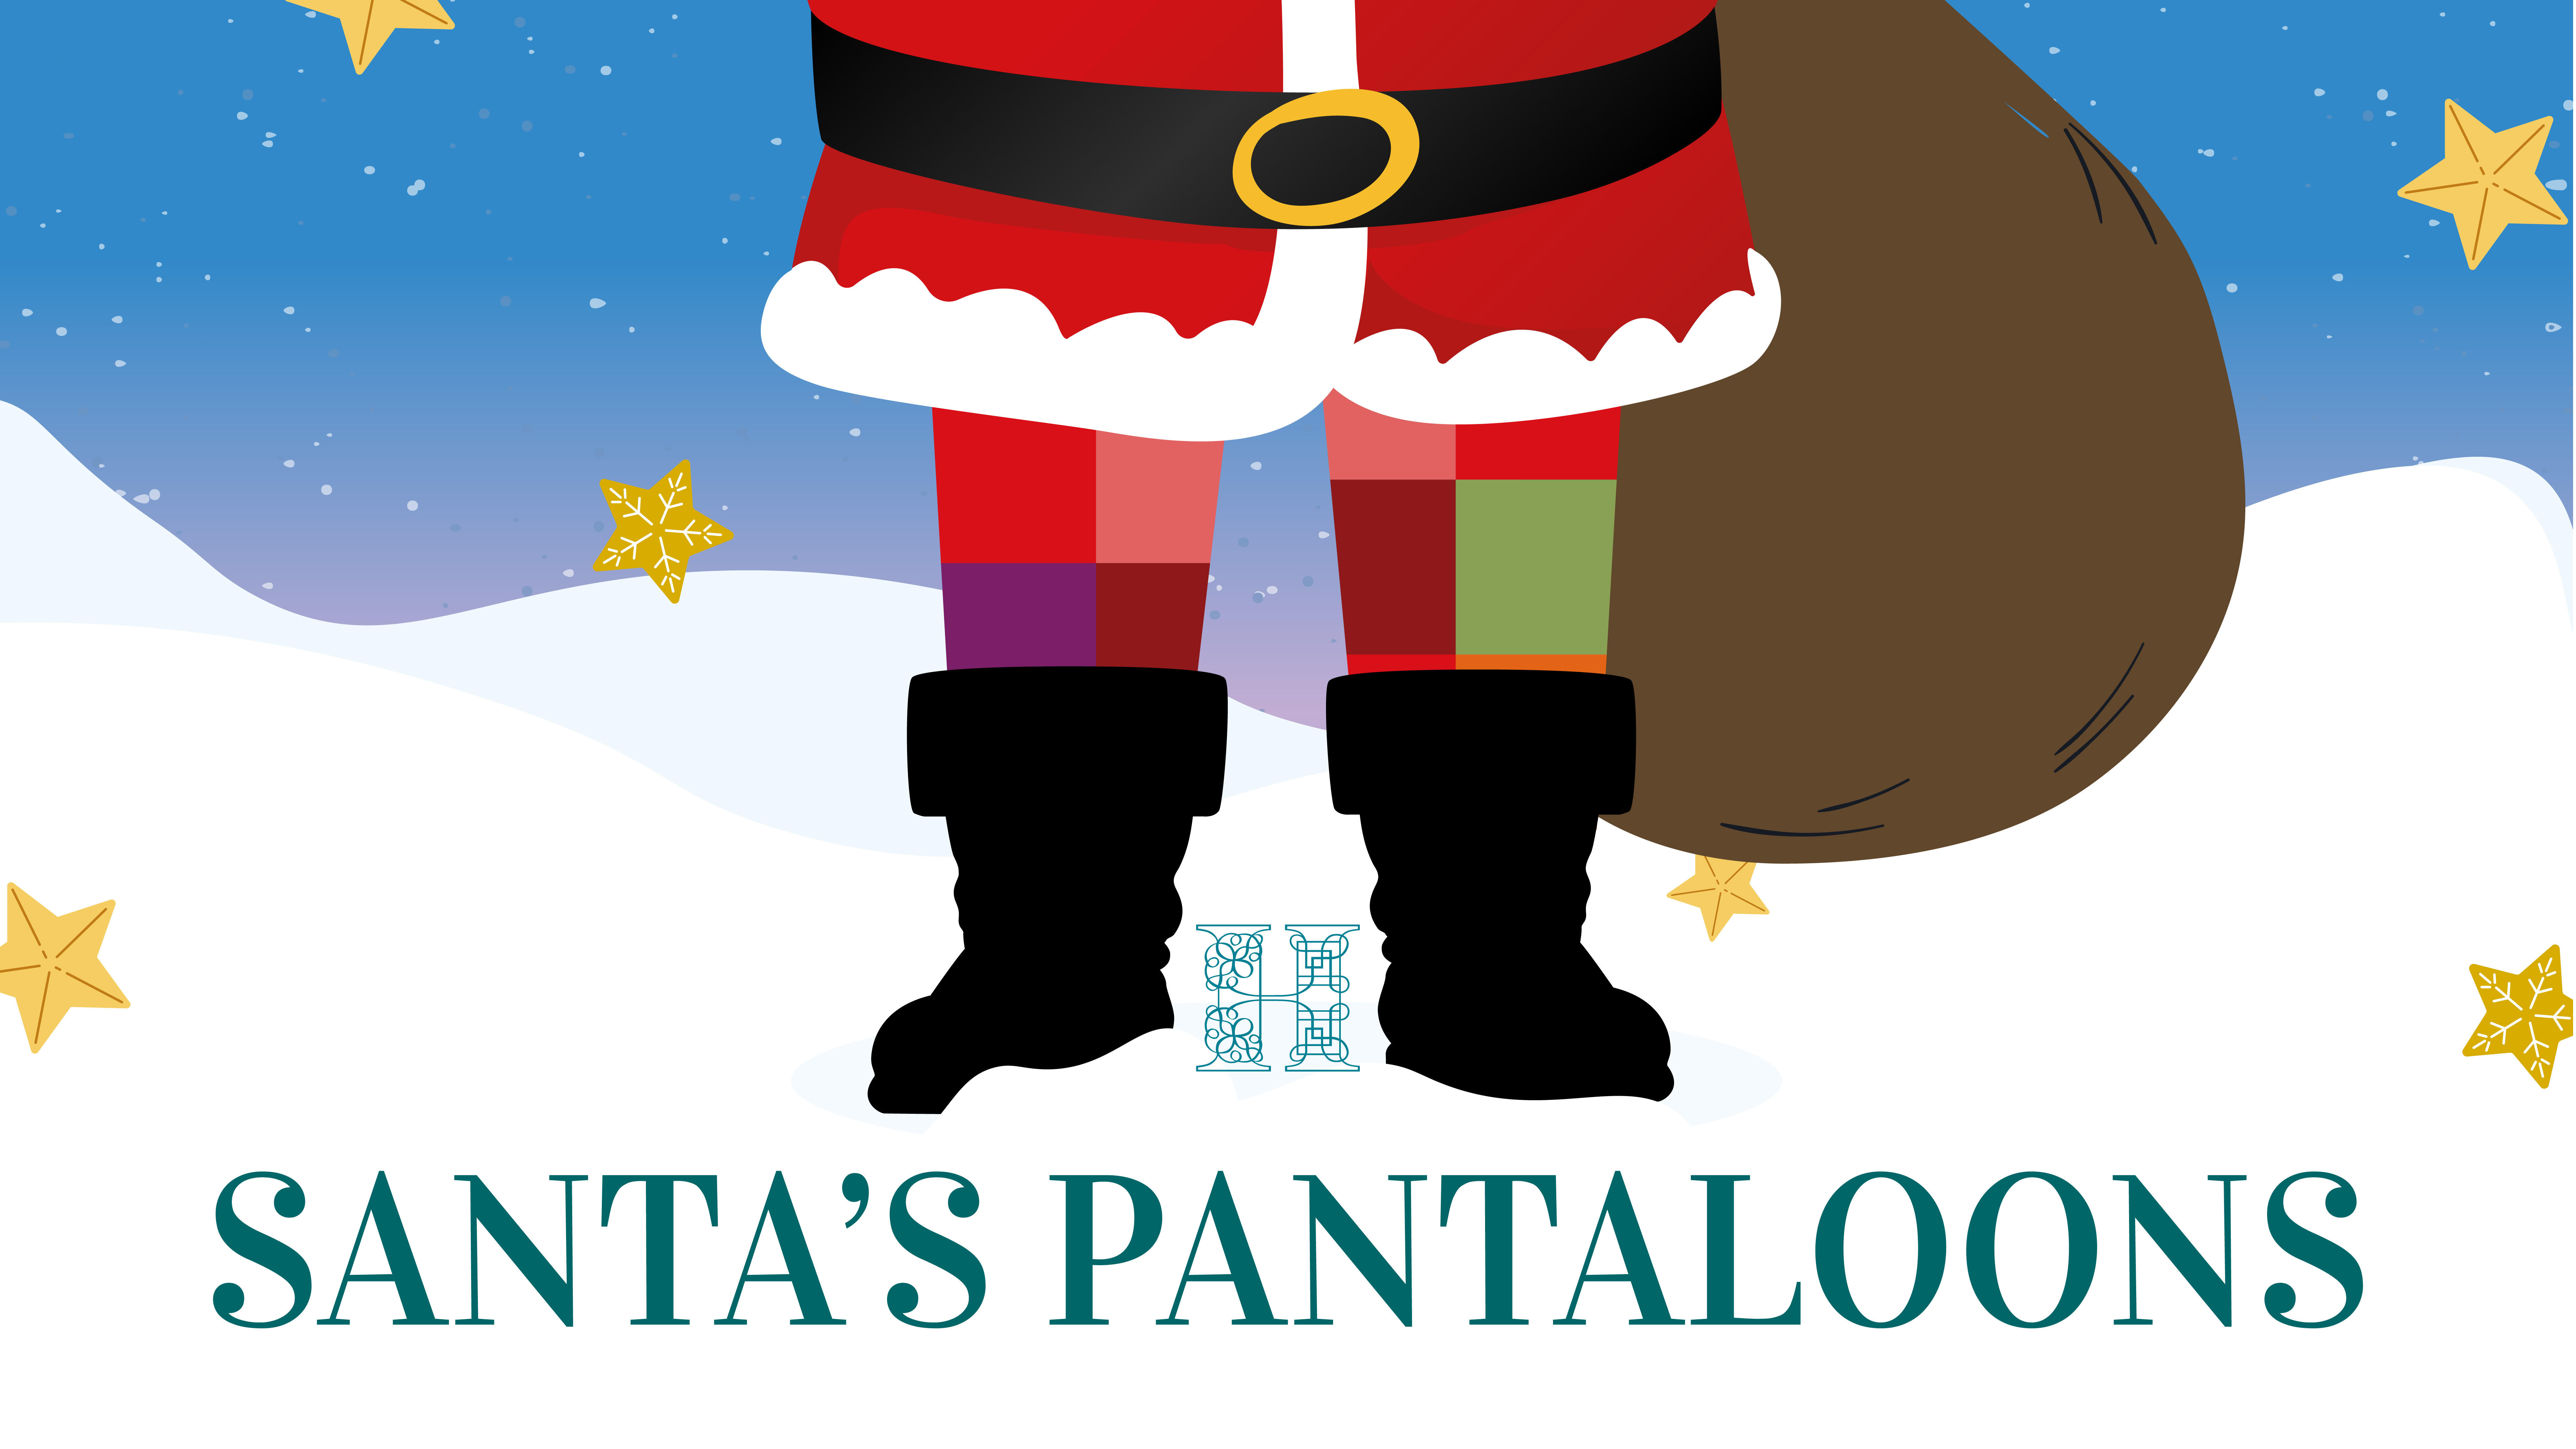 Santa's Pantaloons trail image